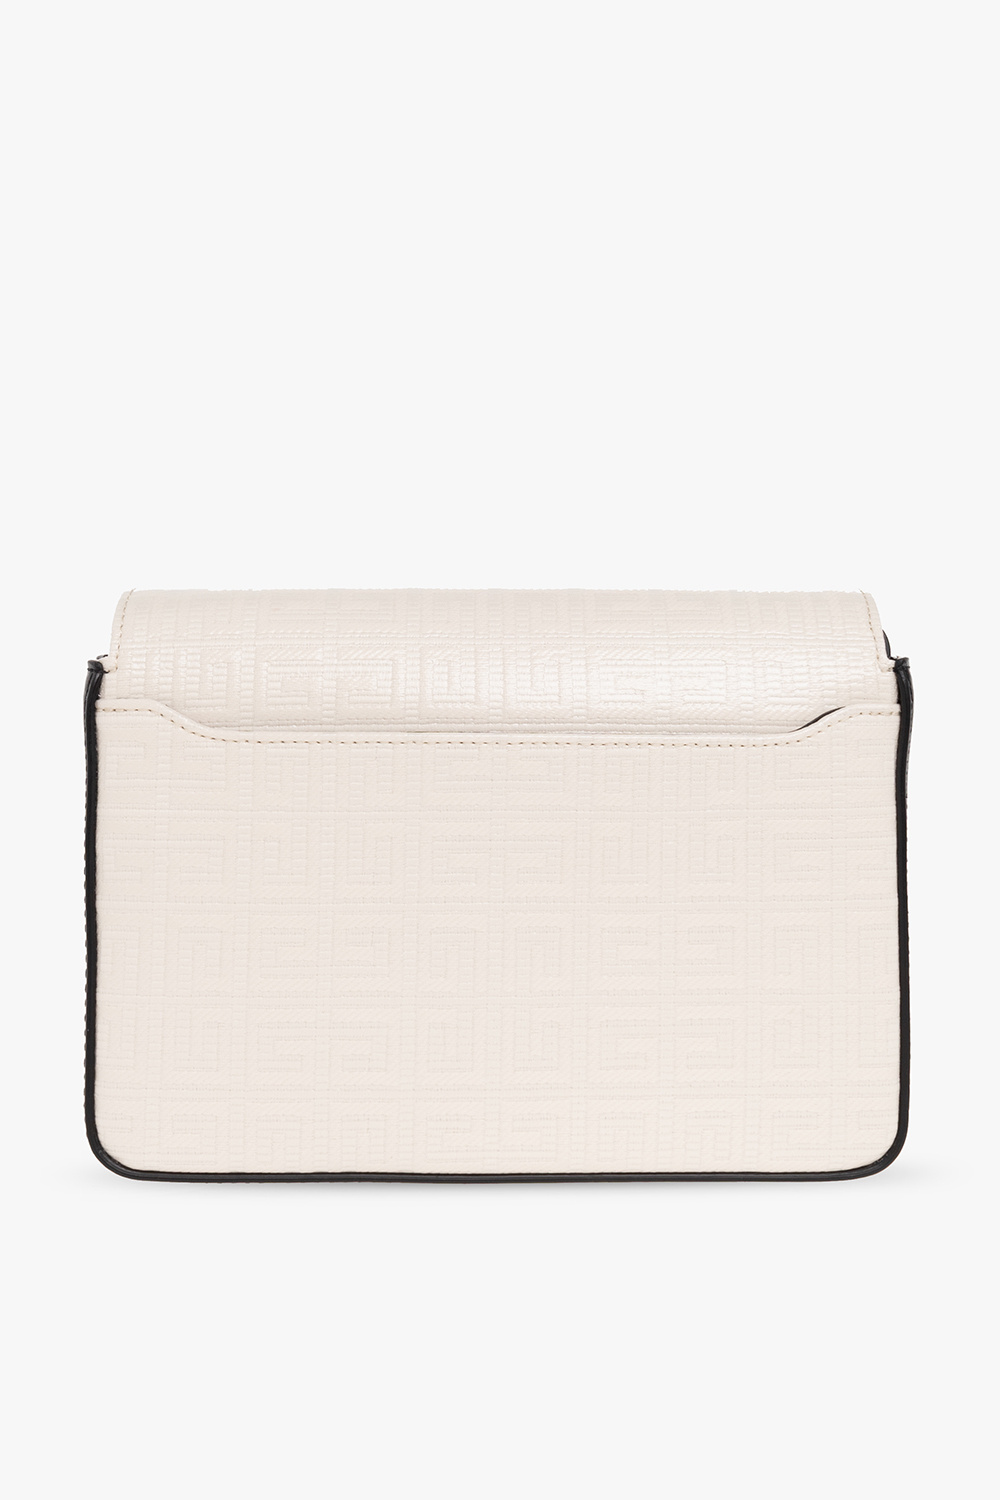 Givenchy ‘4G’ shoulder bag